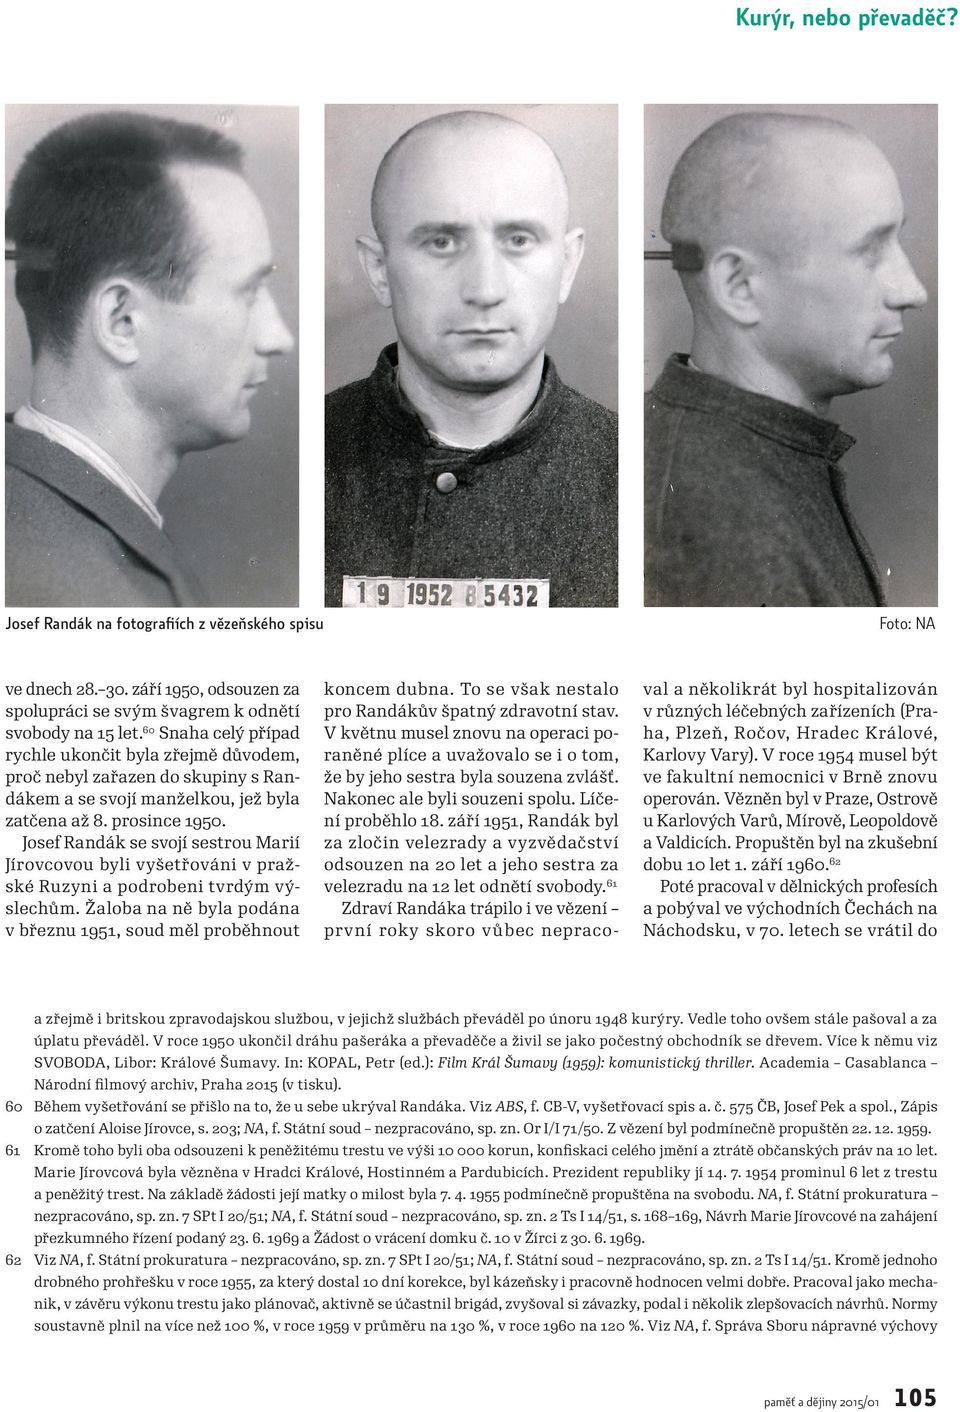 Josef Randák se svojí sestrou Marií Jírovcovou byli vyšetřováni v praž ské Ruzyni a podrobeni tvrdým vý slechům. Žaloba na ně byla podána v březnu 1951, soud měl proběhnout koncem dubna.